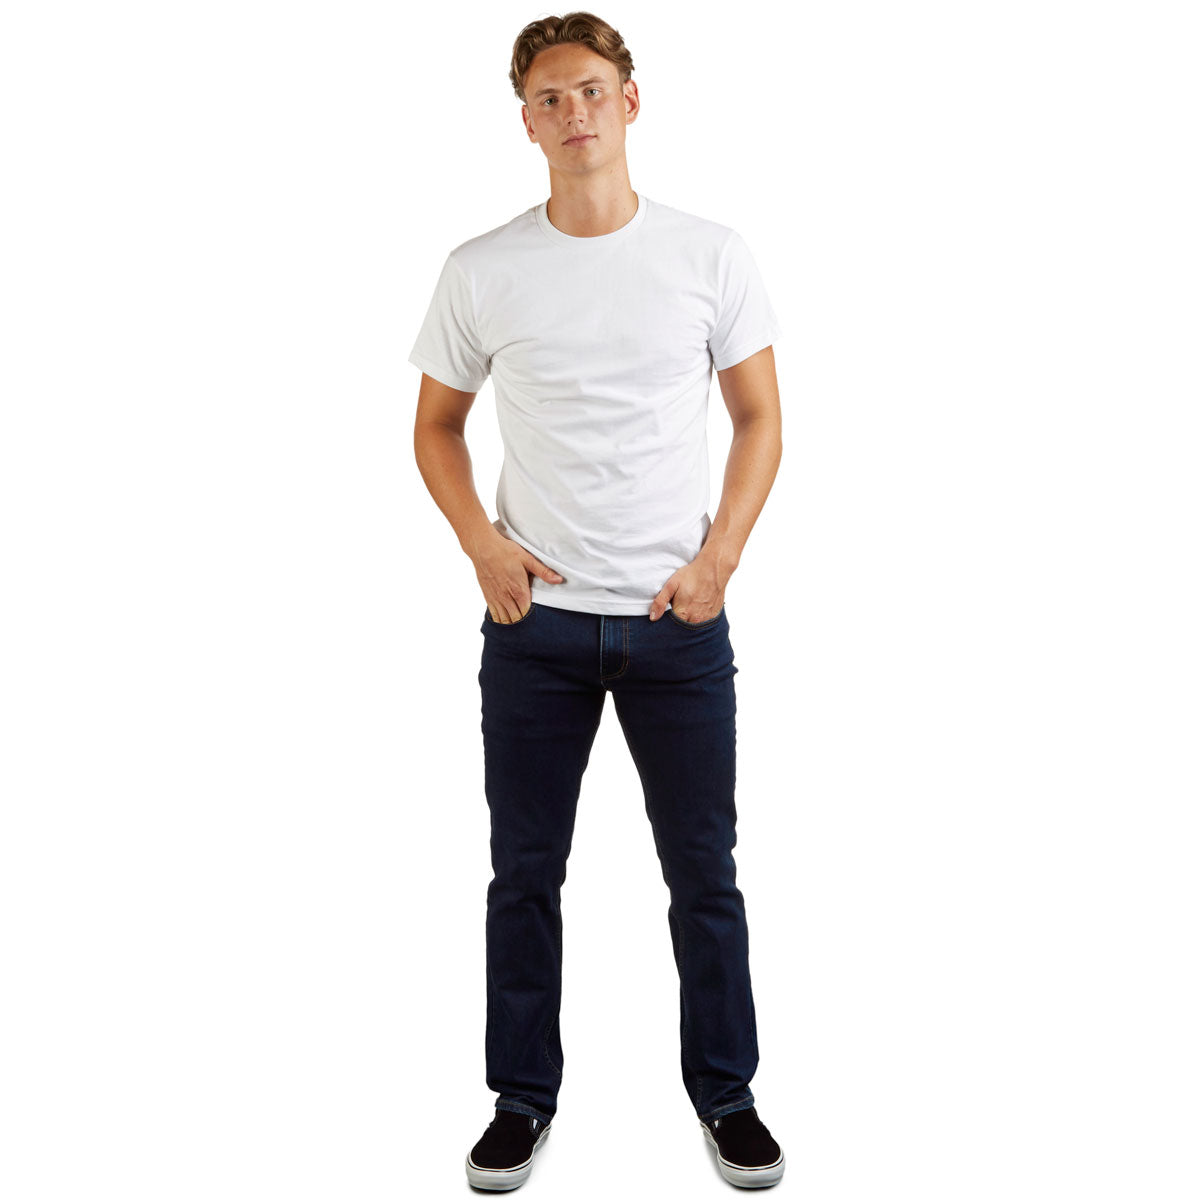 CCS Standard Plus Slim Denim Jeans - Indigo image 2